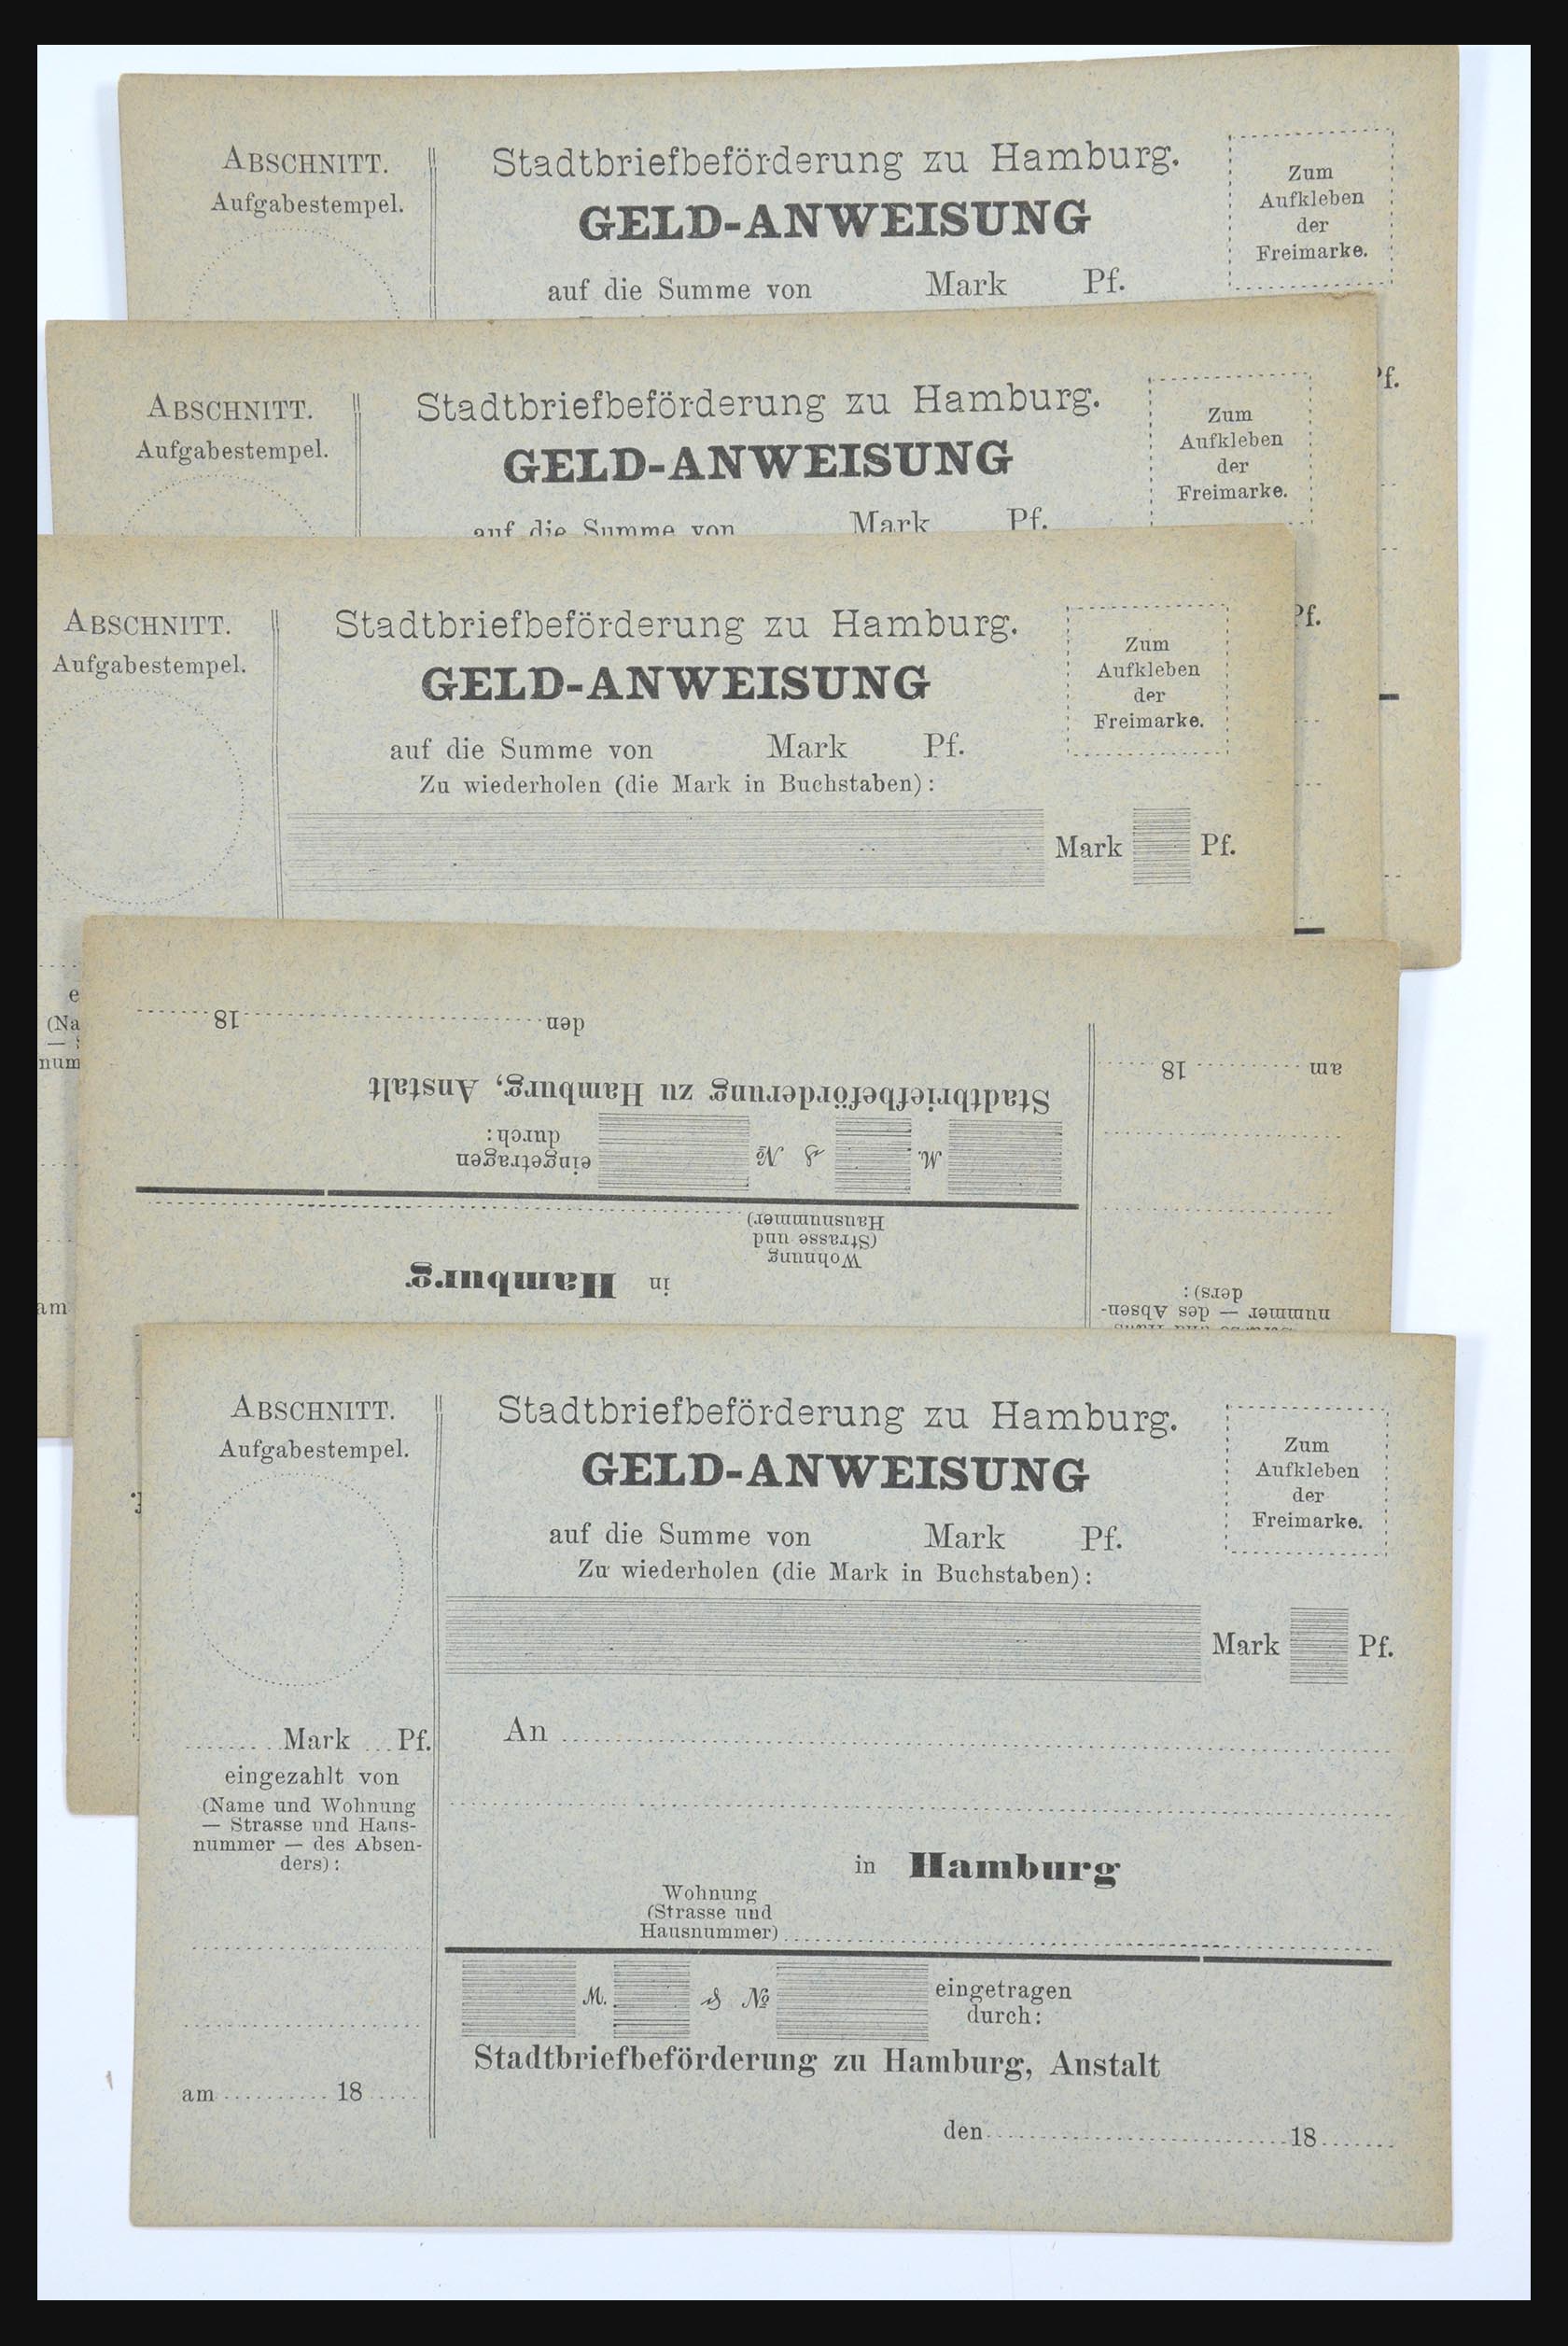 31578 262 - 31578 Germany localpost 1861-1900.